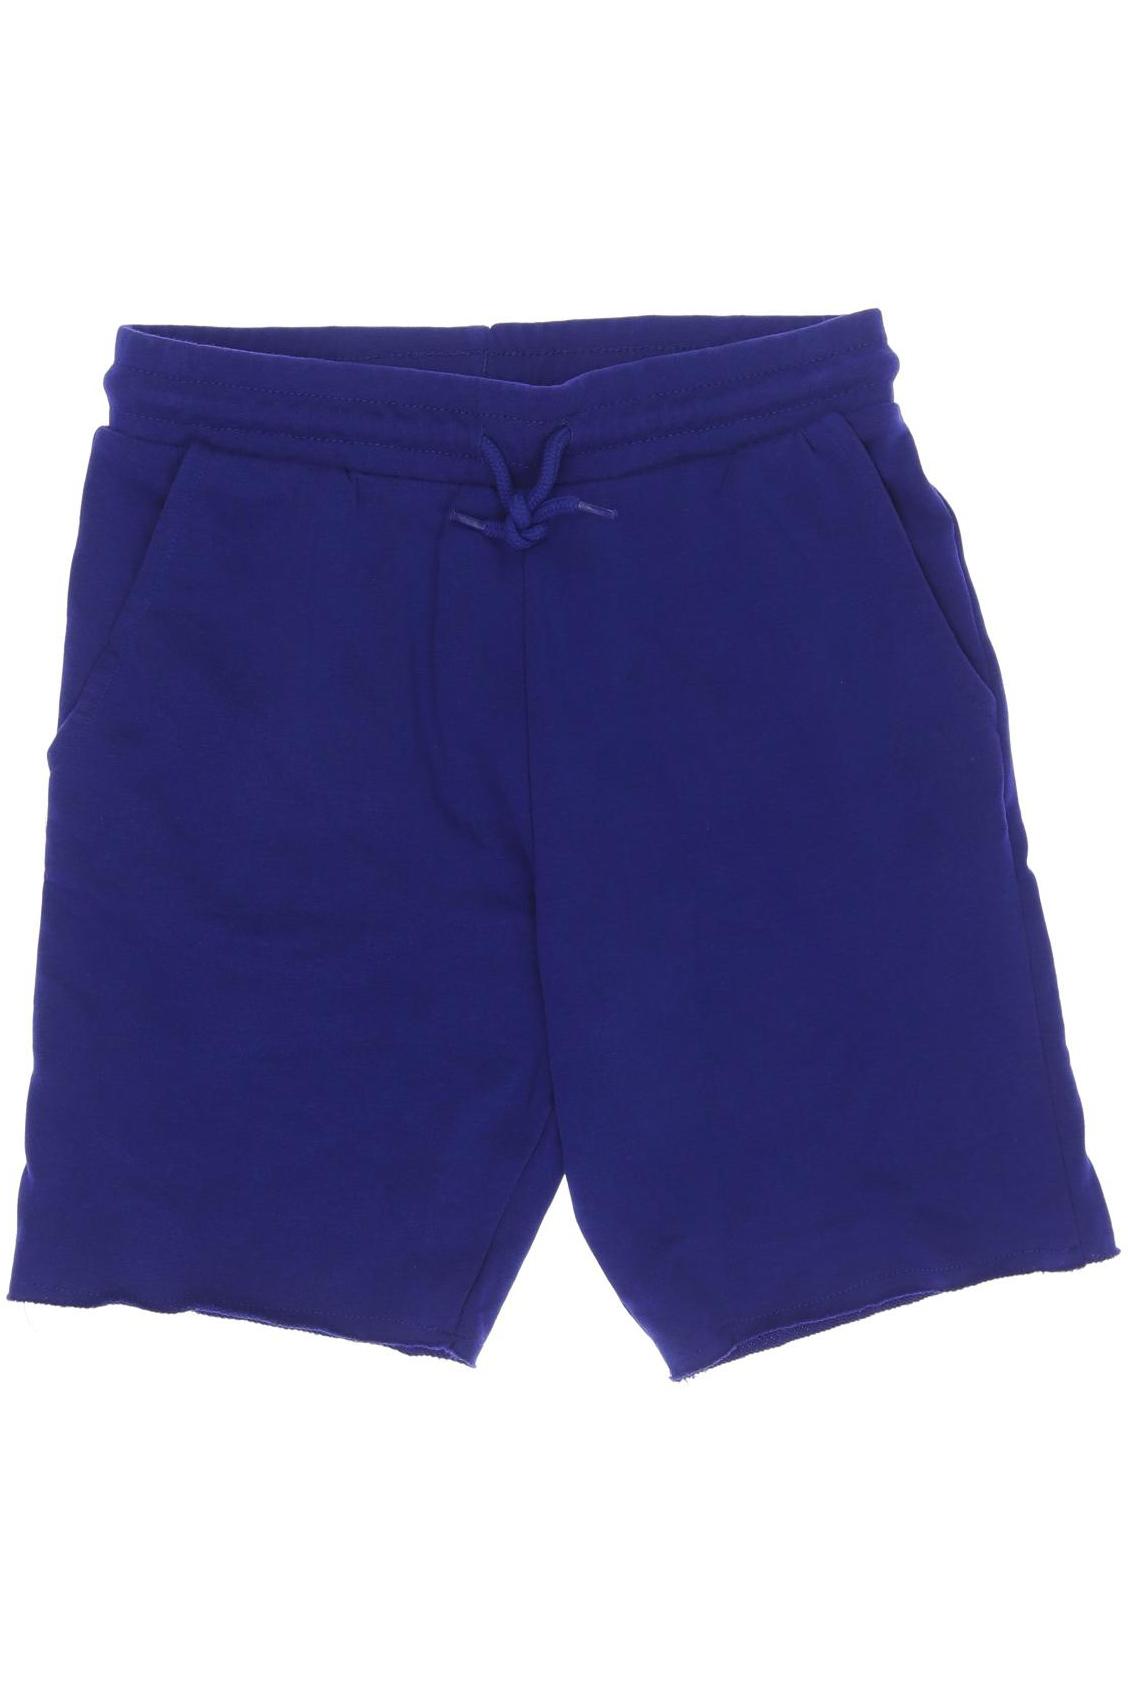 H&M Herren Shorts, blau, Gr. 158 von H&M